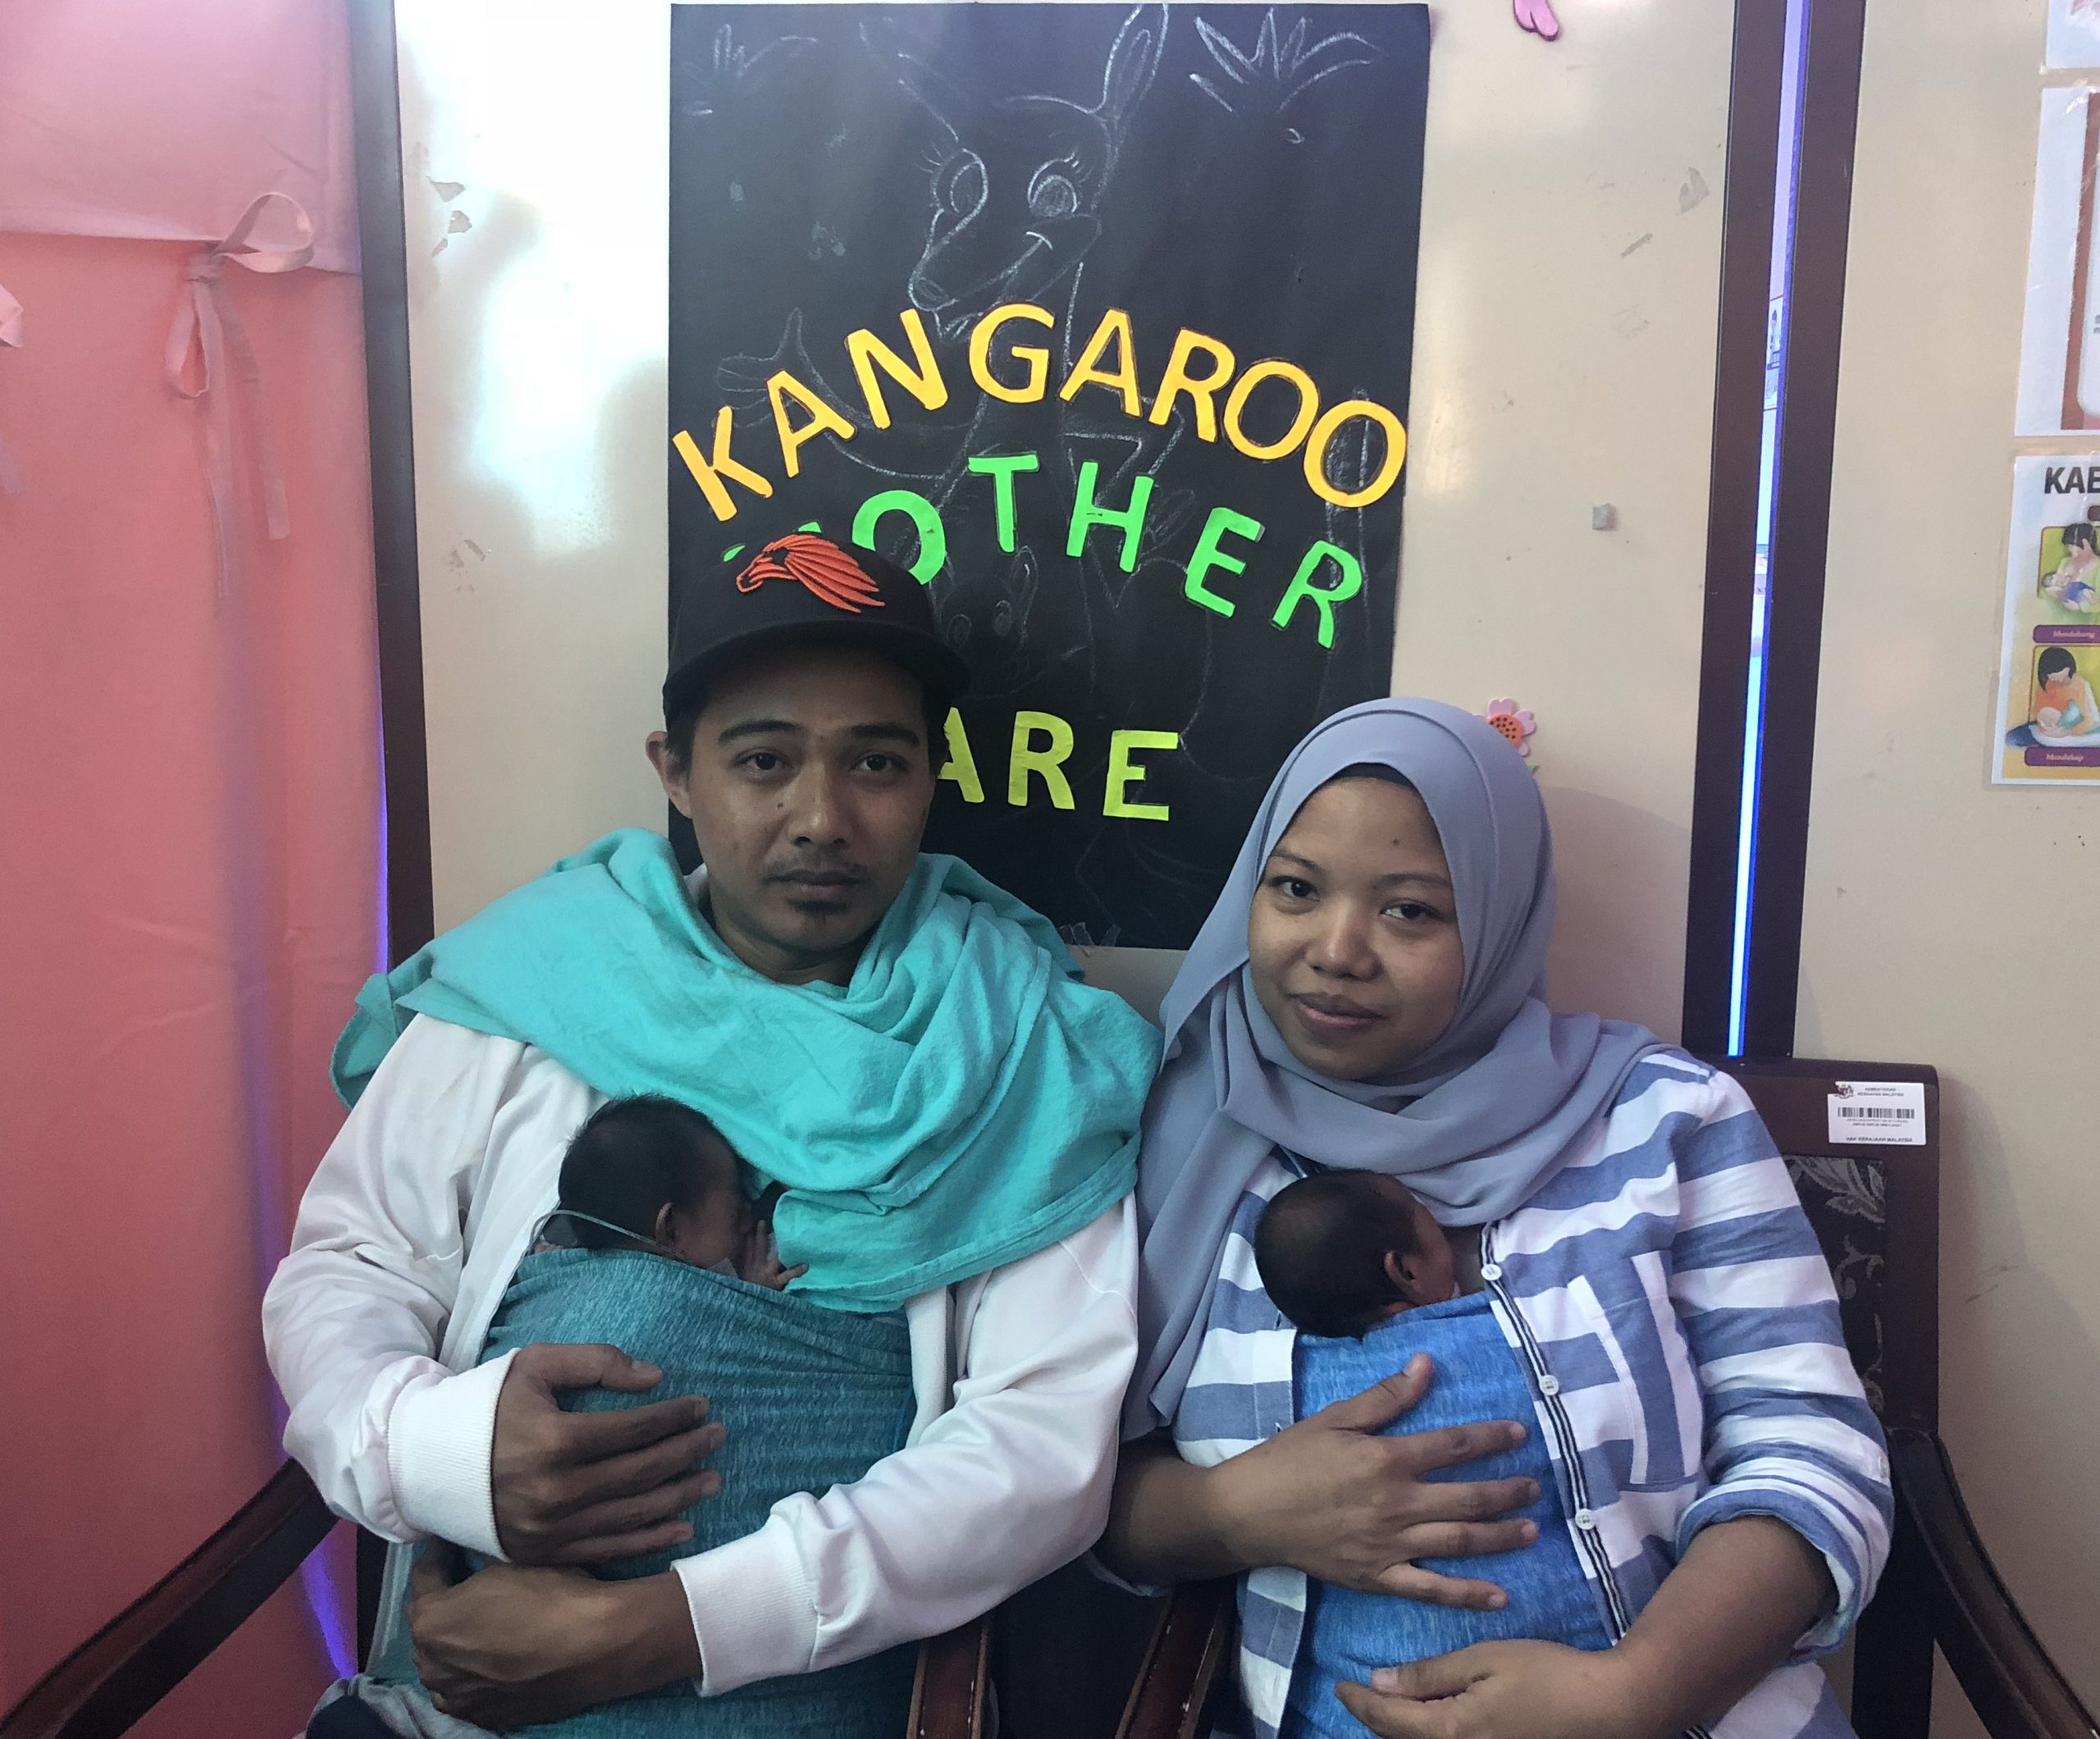 （大北马）袋鼠式护理（KMC）对早产儿的重要性